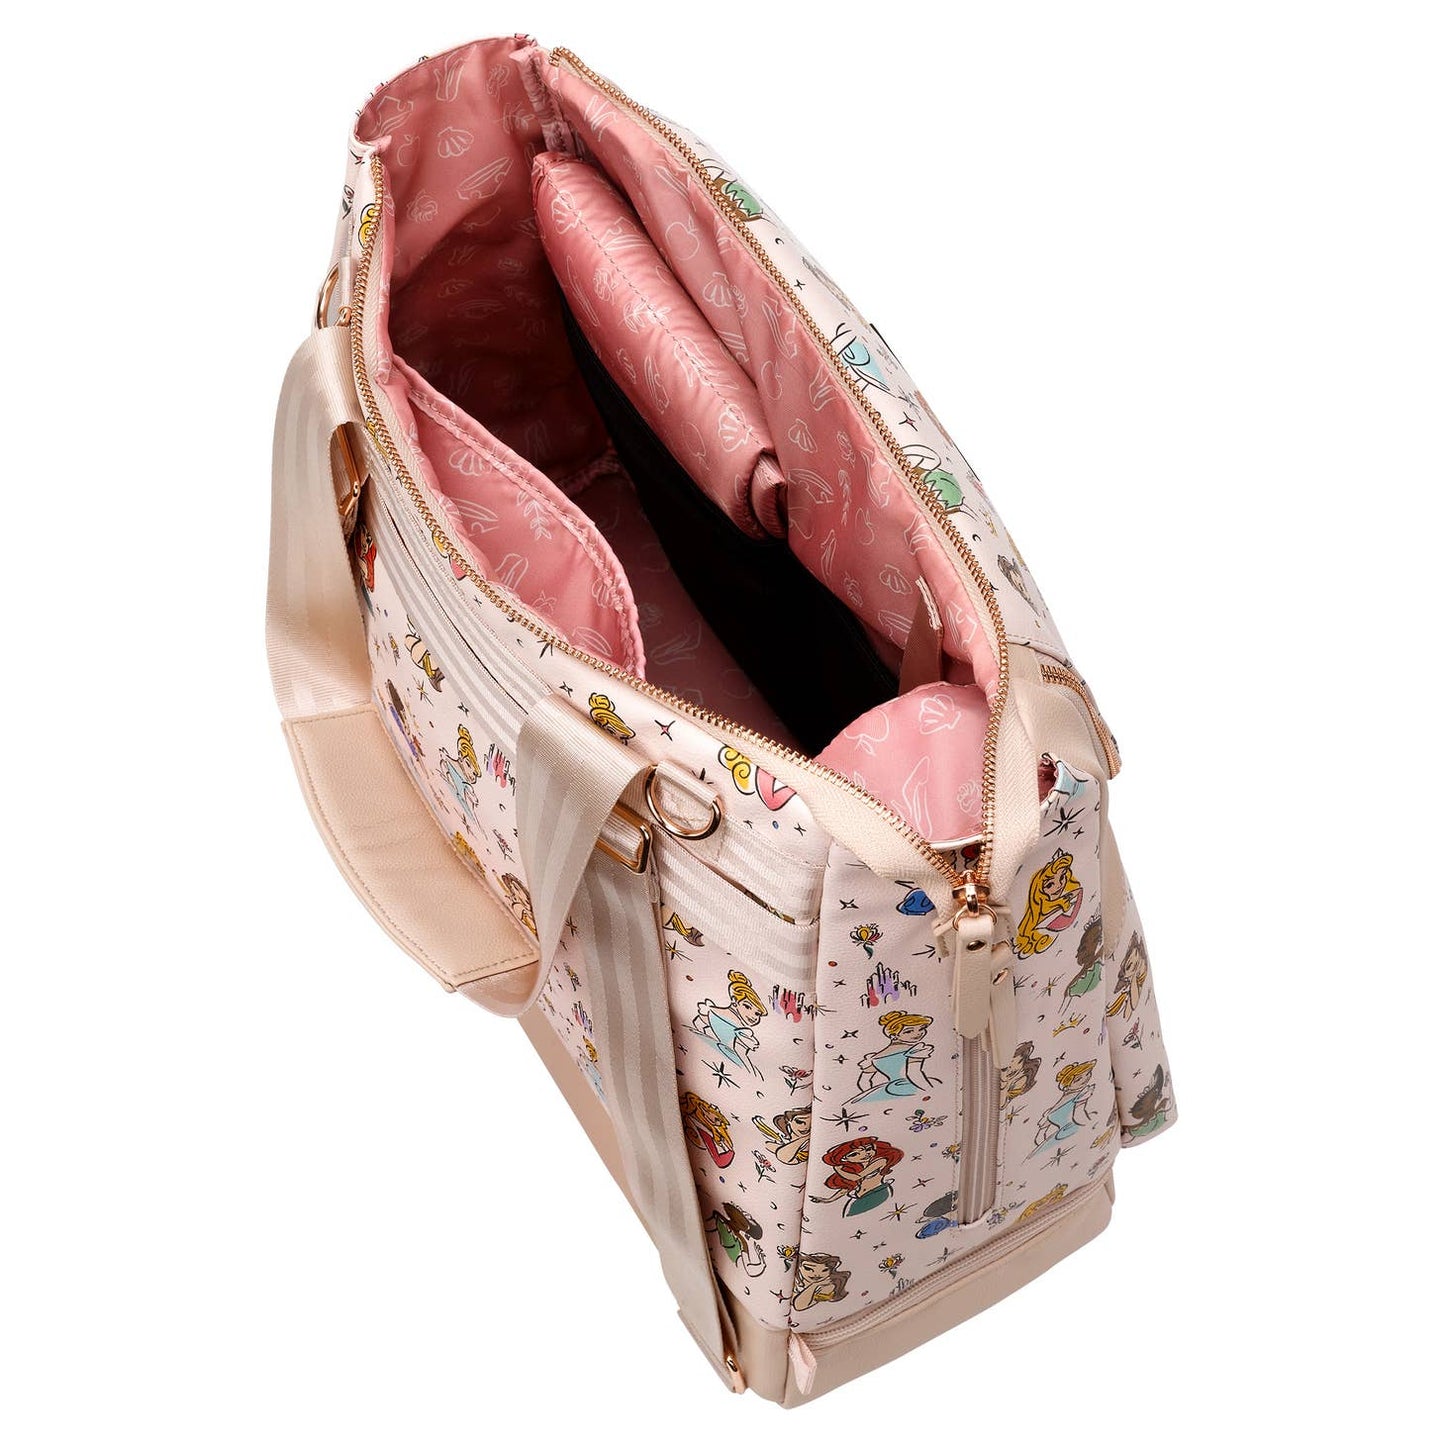 Disney Princess Diaper Bag and Backpack